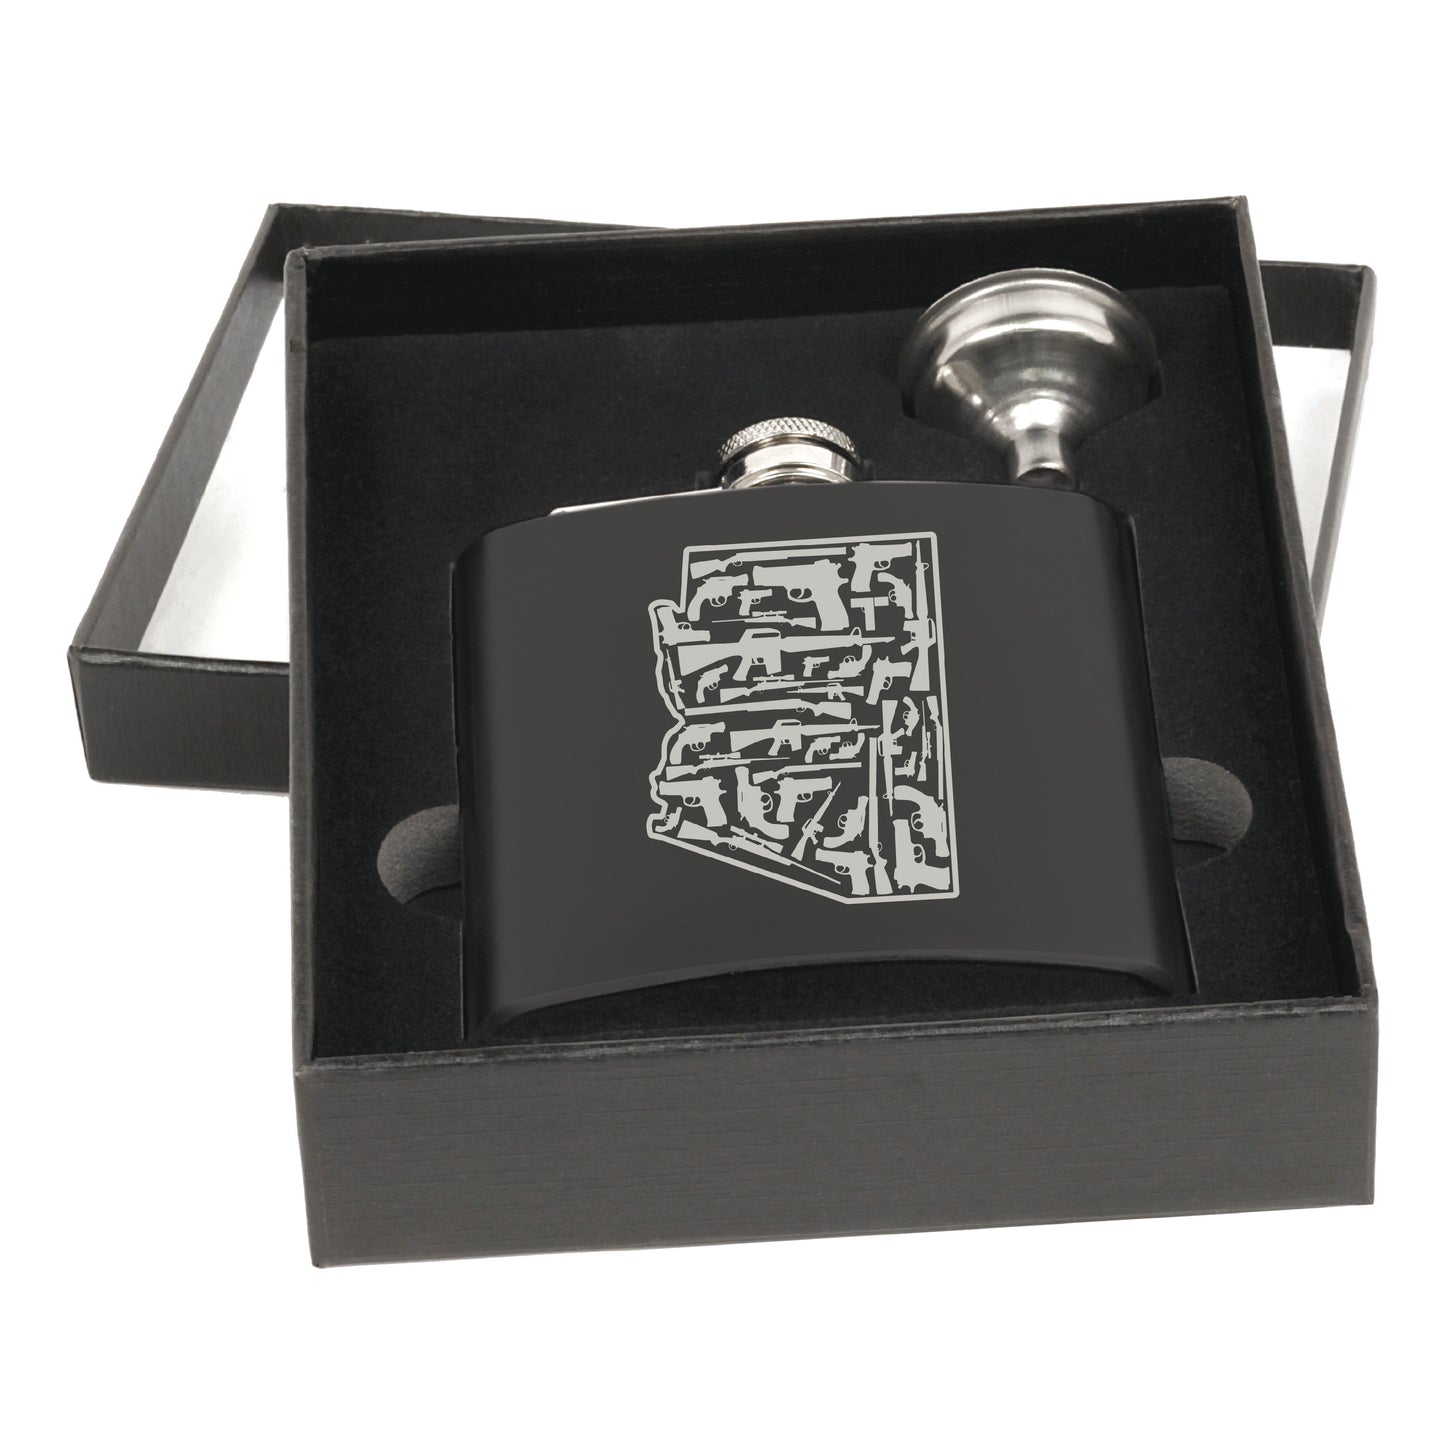 Engraved Flask - Black